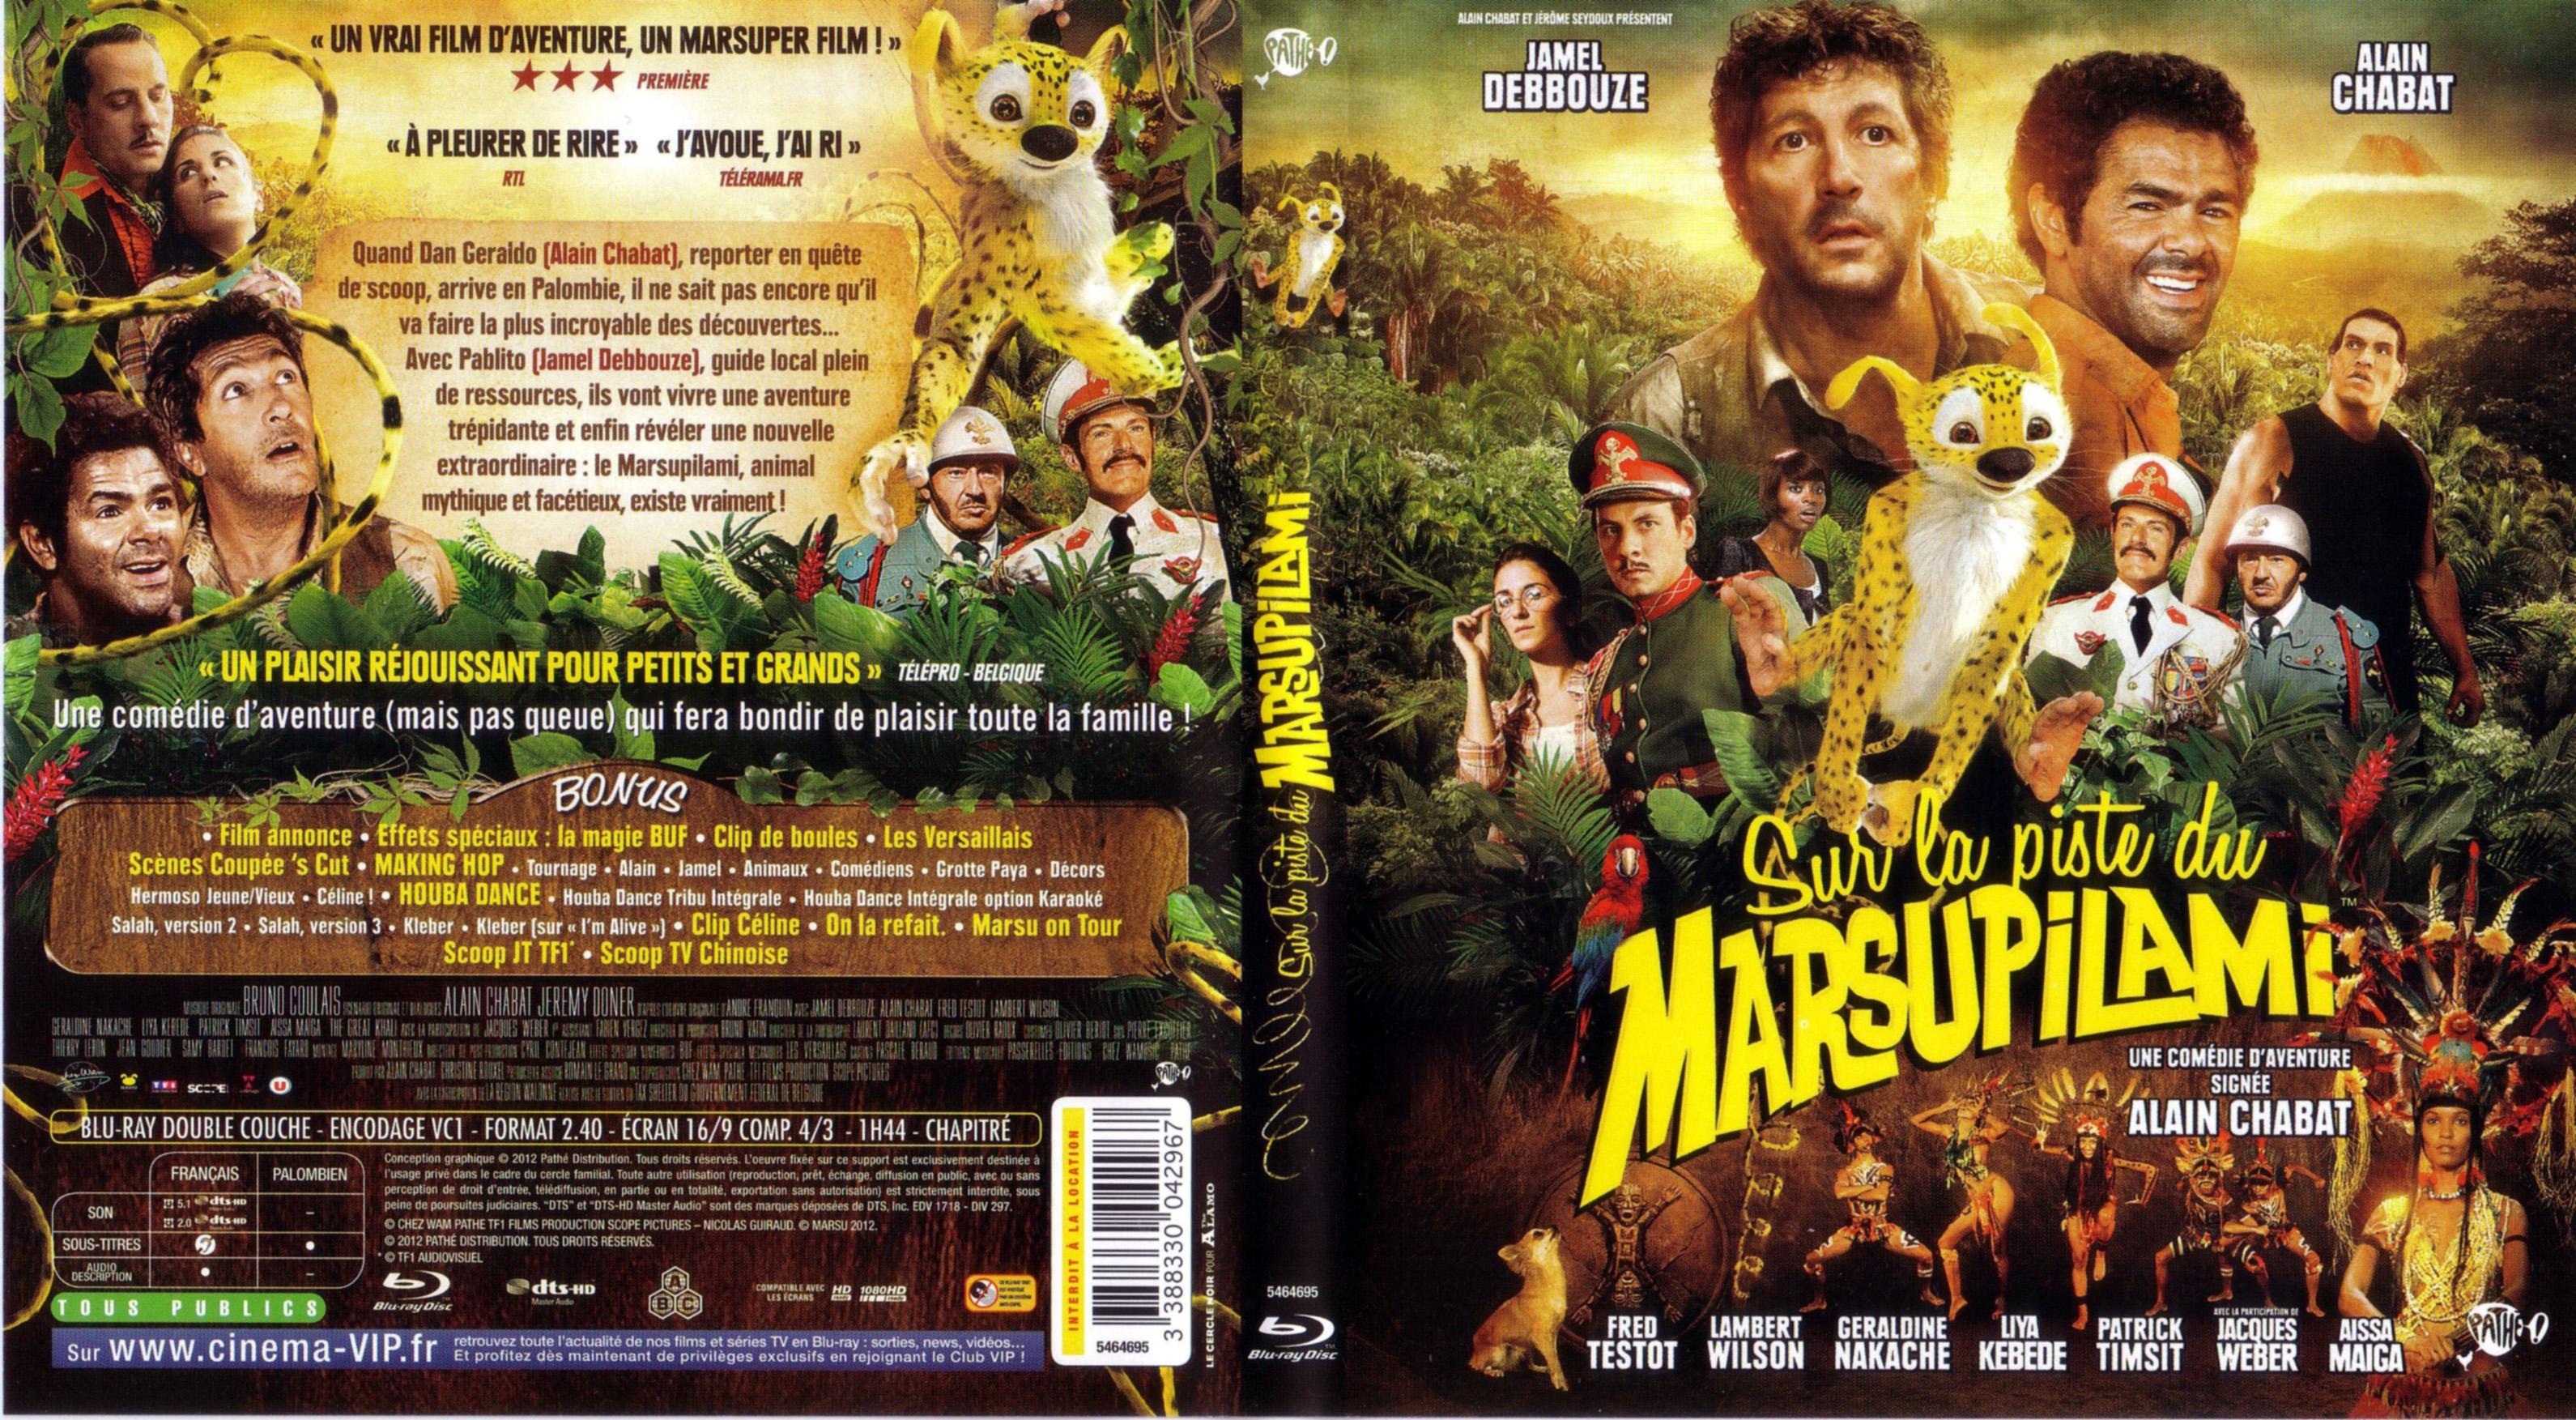 Jaquette DVD Sur la piste du Marsupilami (BLU-RAY)